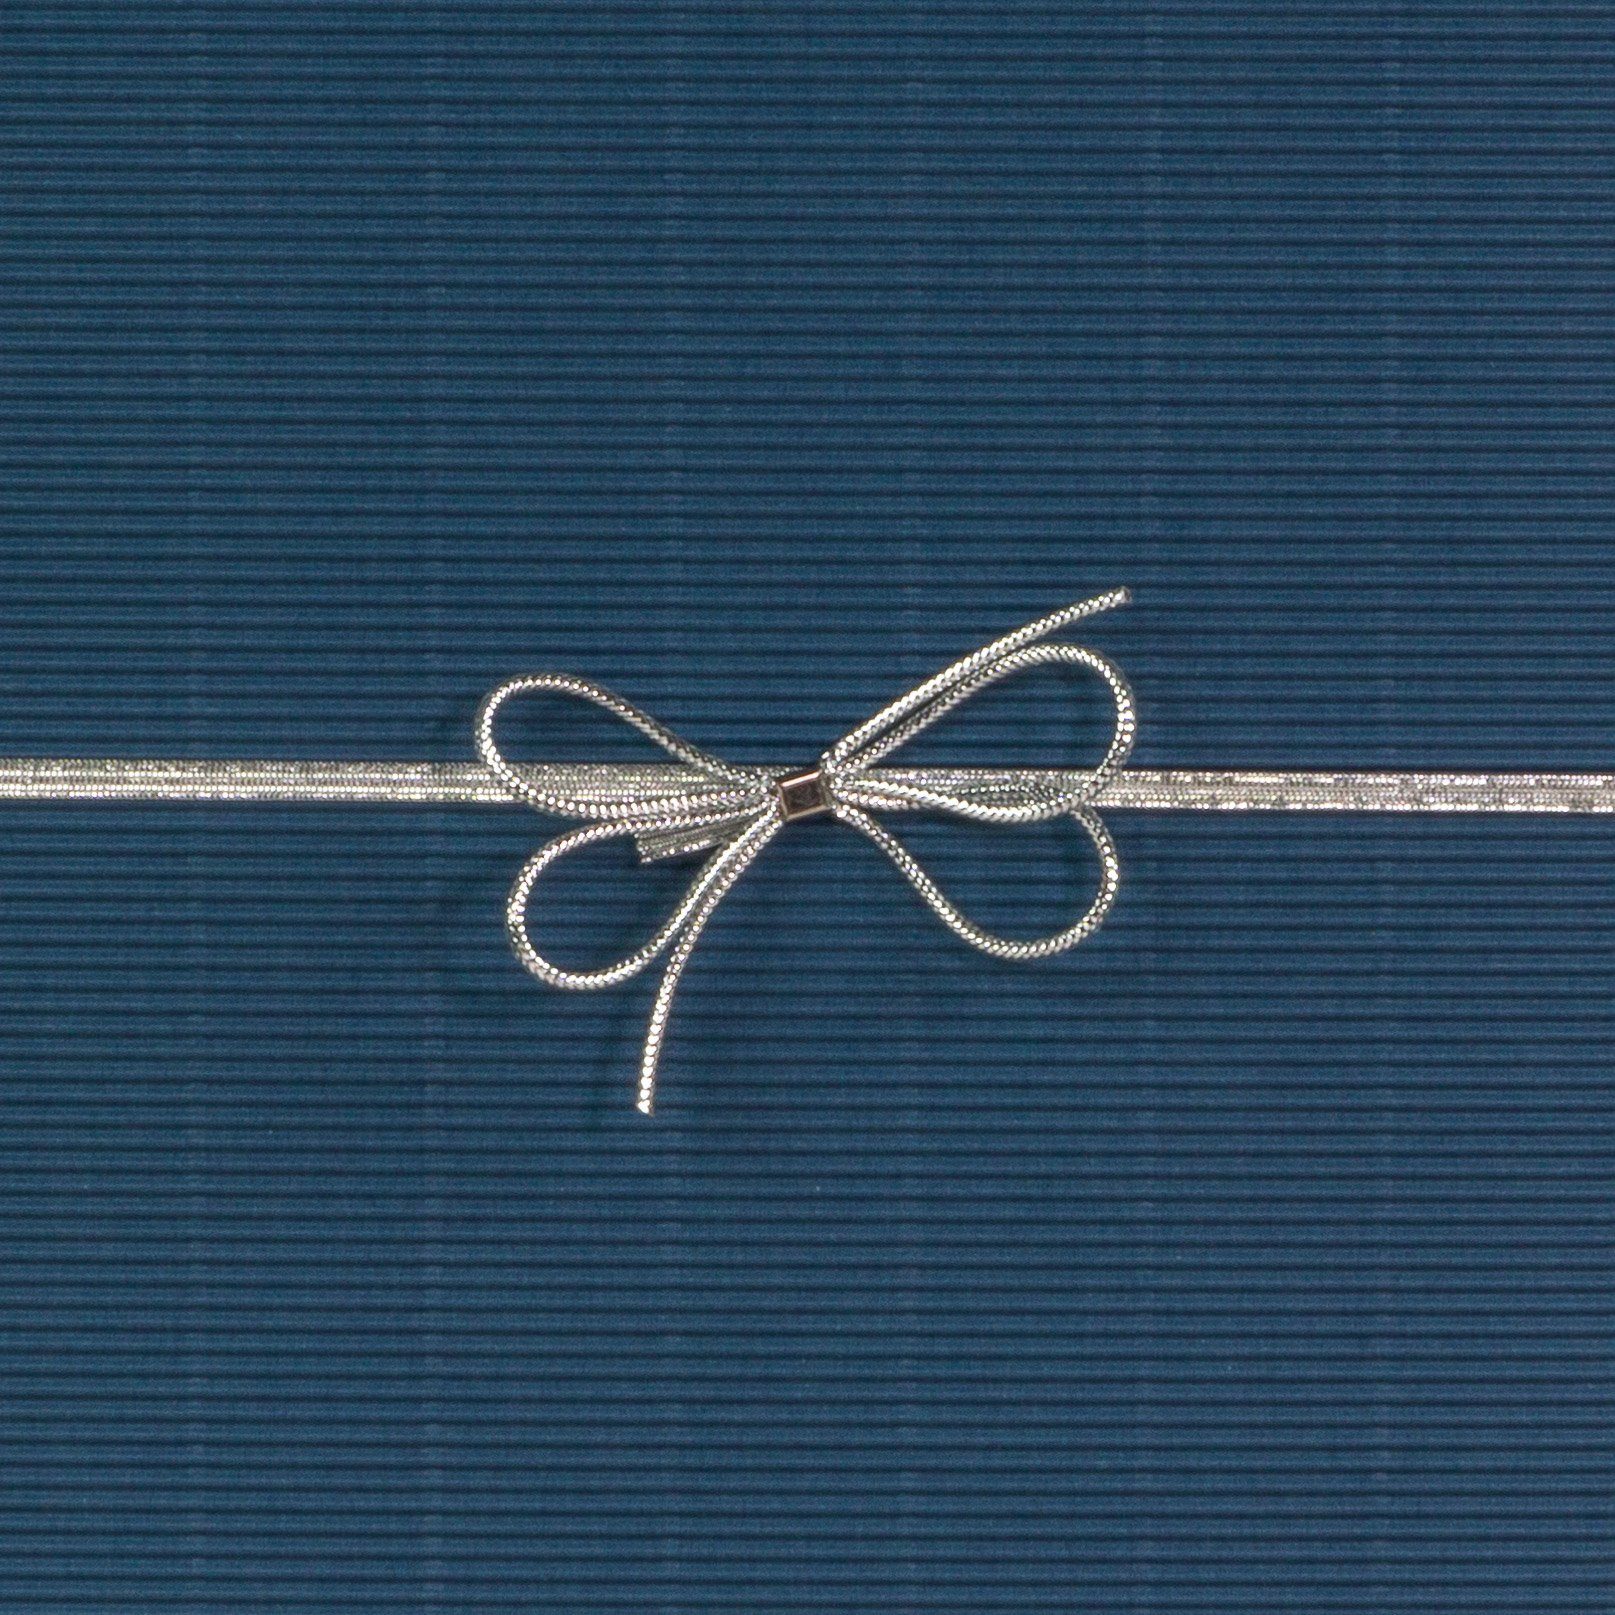 KK Verpackungen Silber Fertigschleife Geschenkschleife Silber Länge 700-1400mm Lang Geschenkband, cm x 100 70-140